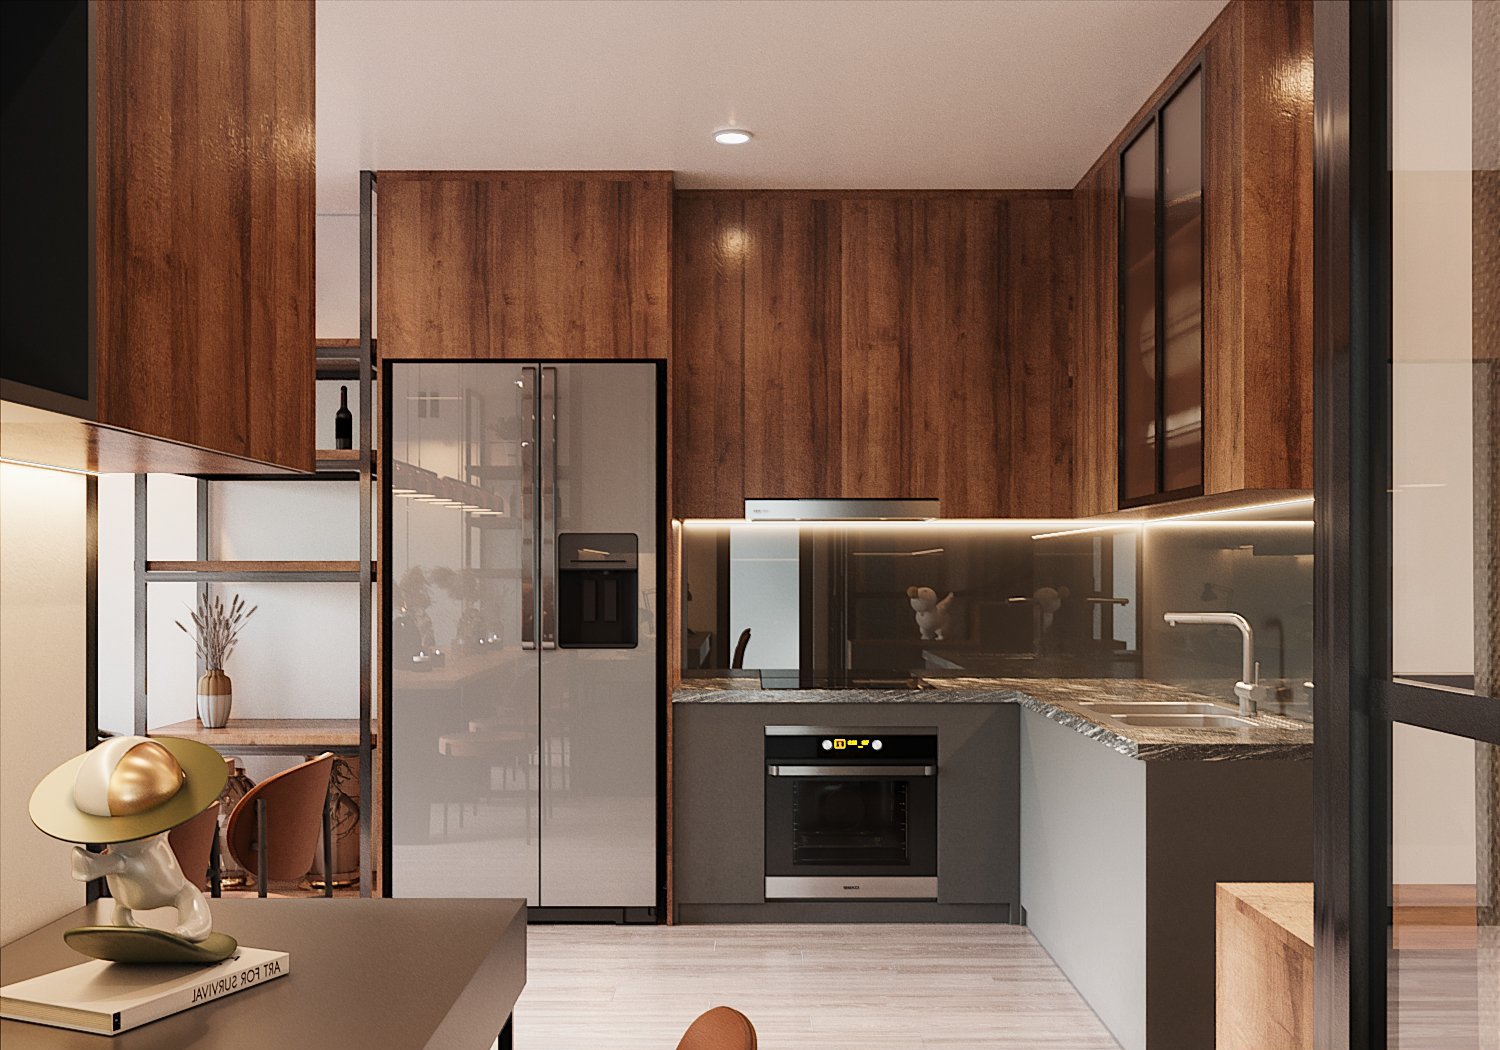 hình ảnh phòng bếp chữ L trong căn hộ 68m2 với tủ bếp bằng gỗ cao kịch tràn, tủ lạnh và gạch ốp mặt bàn bếp màu xám trung tính